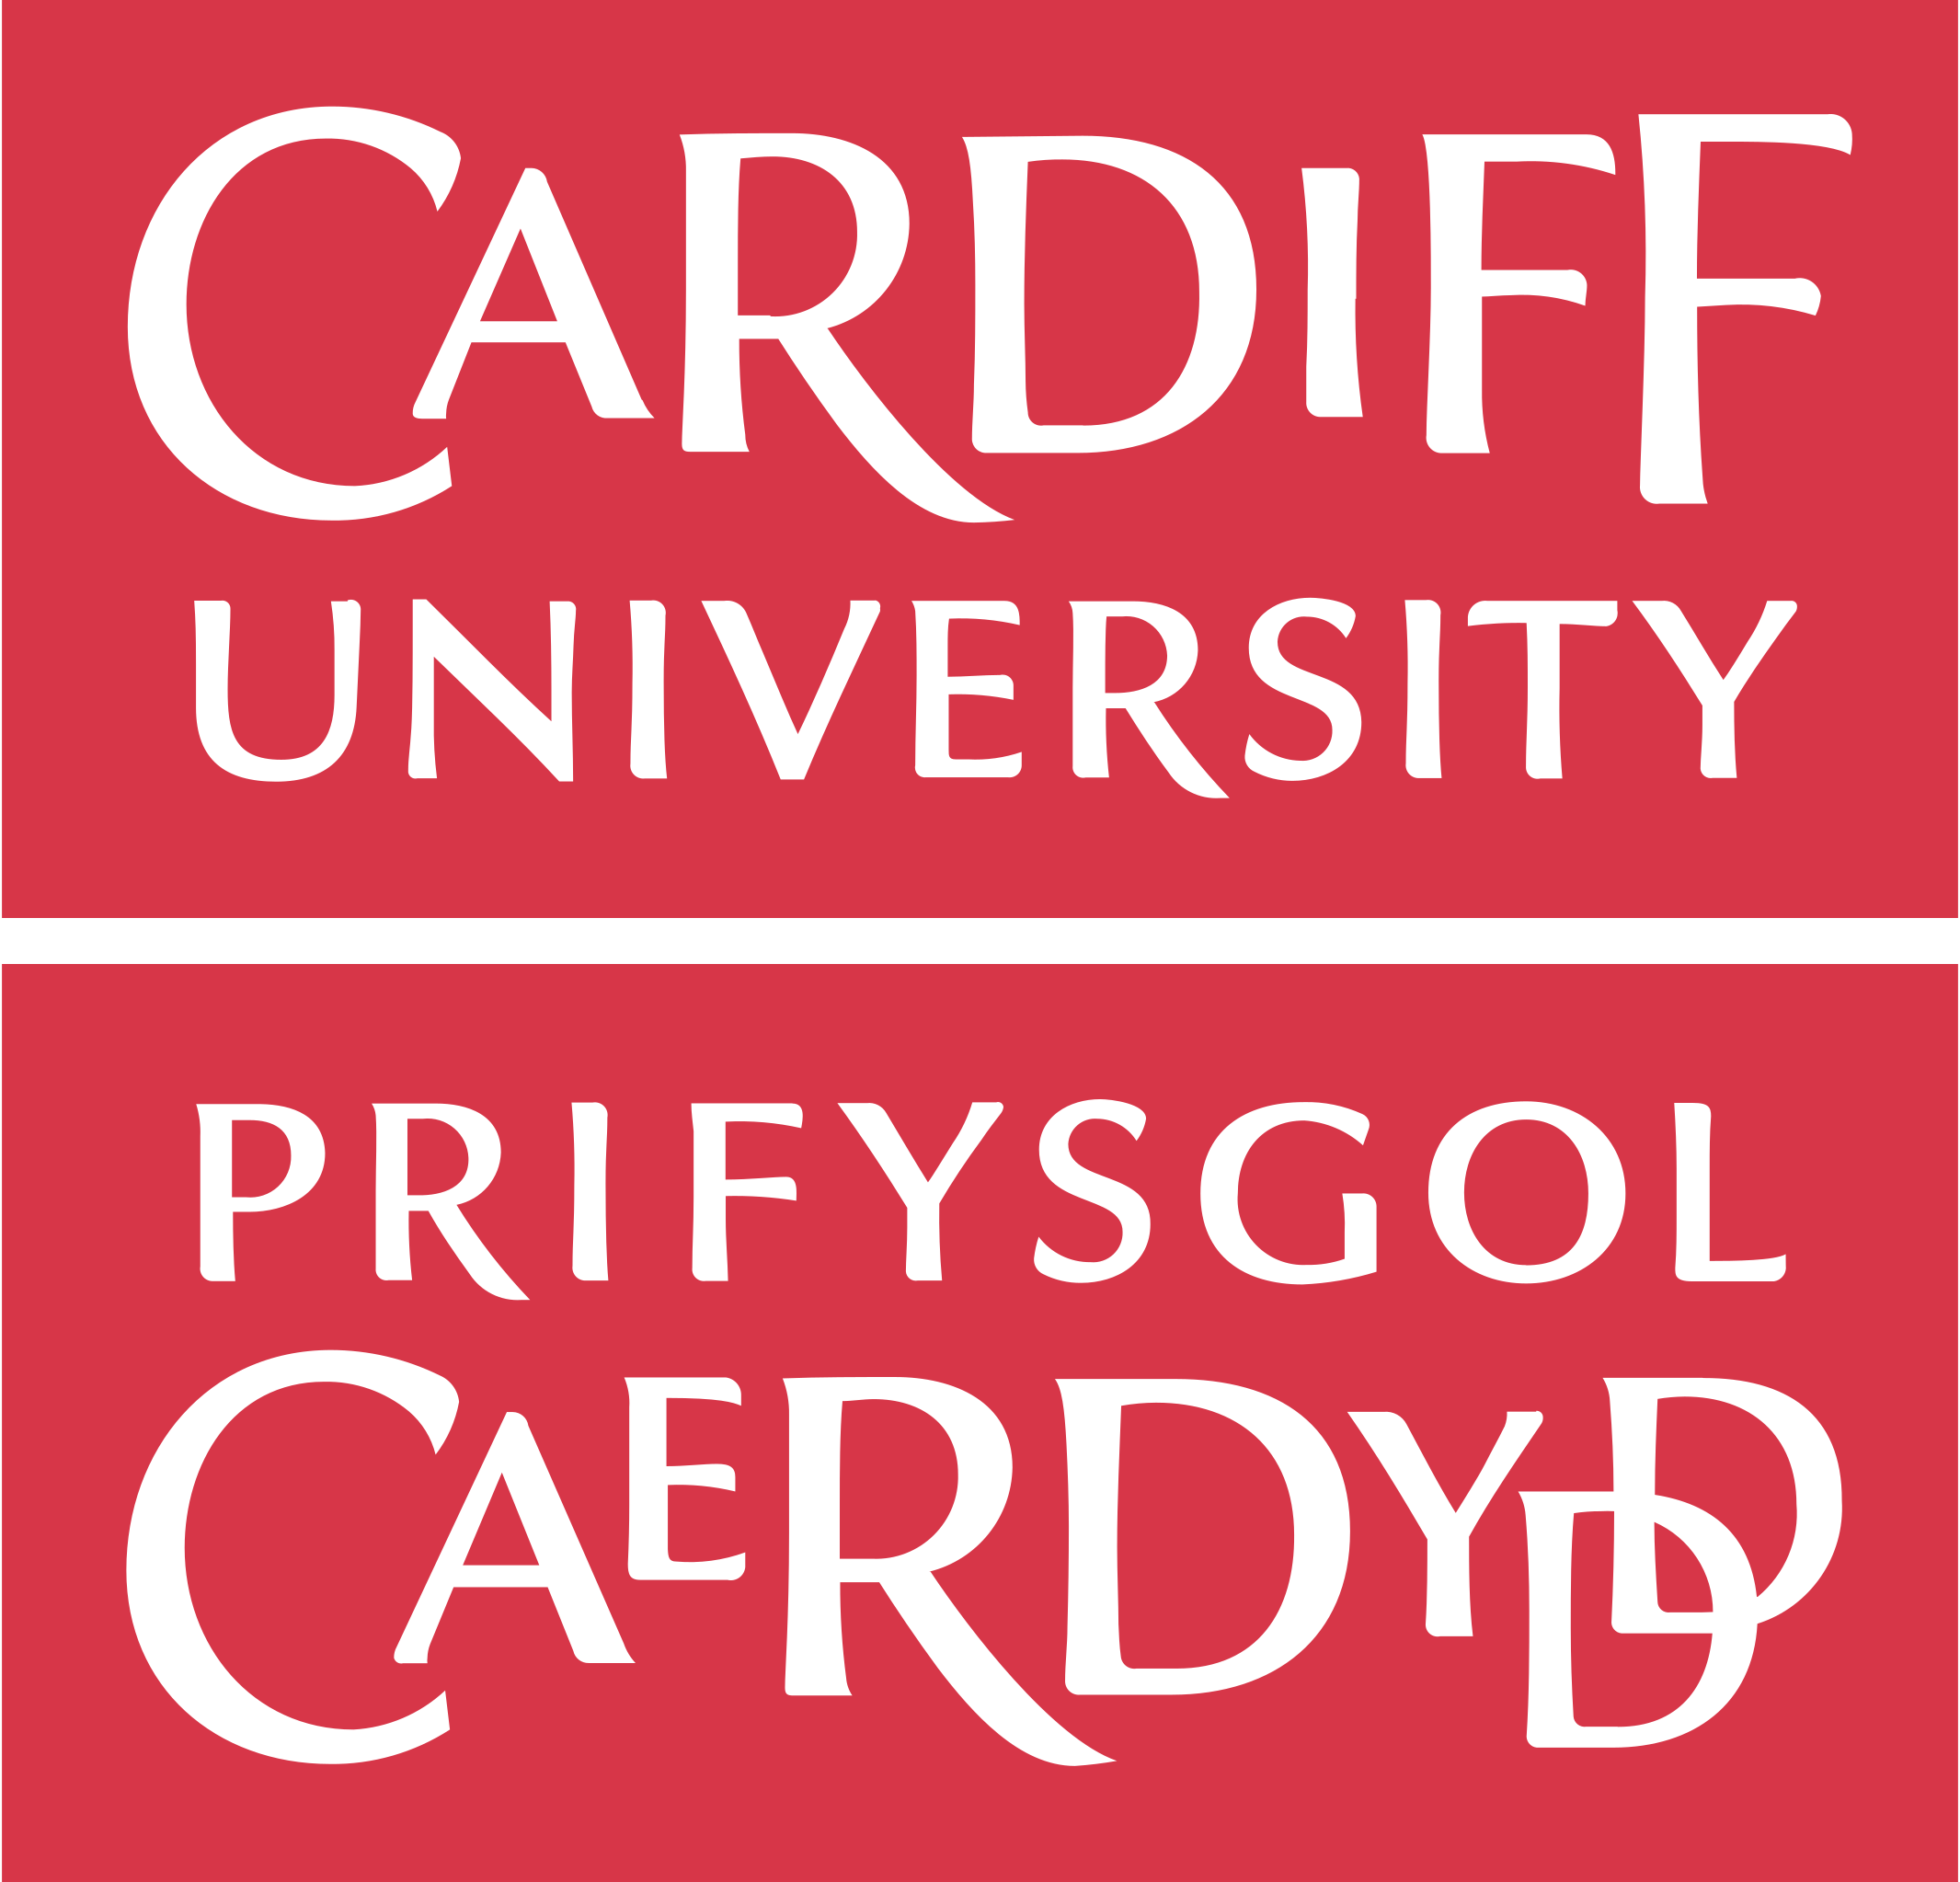 Cardiff_University_logo